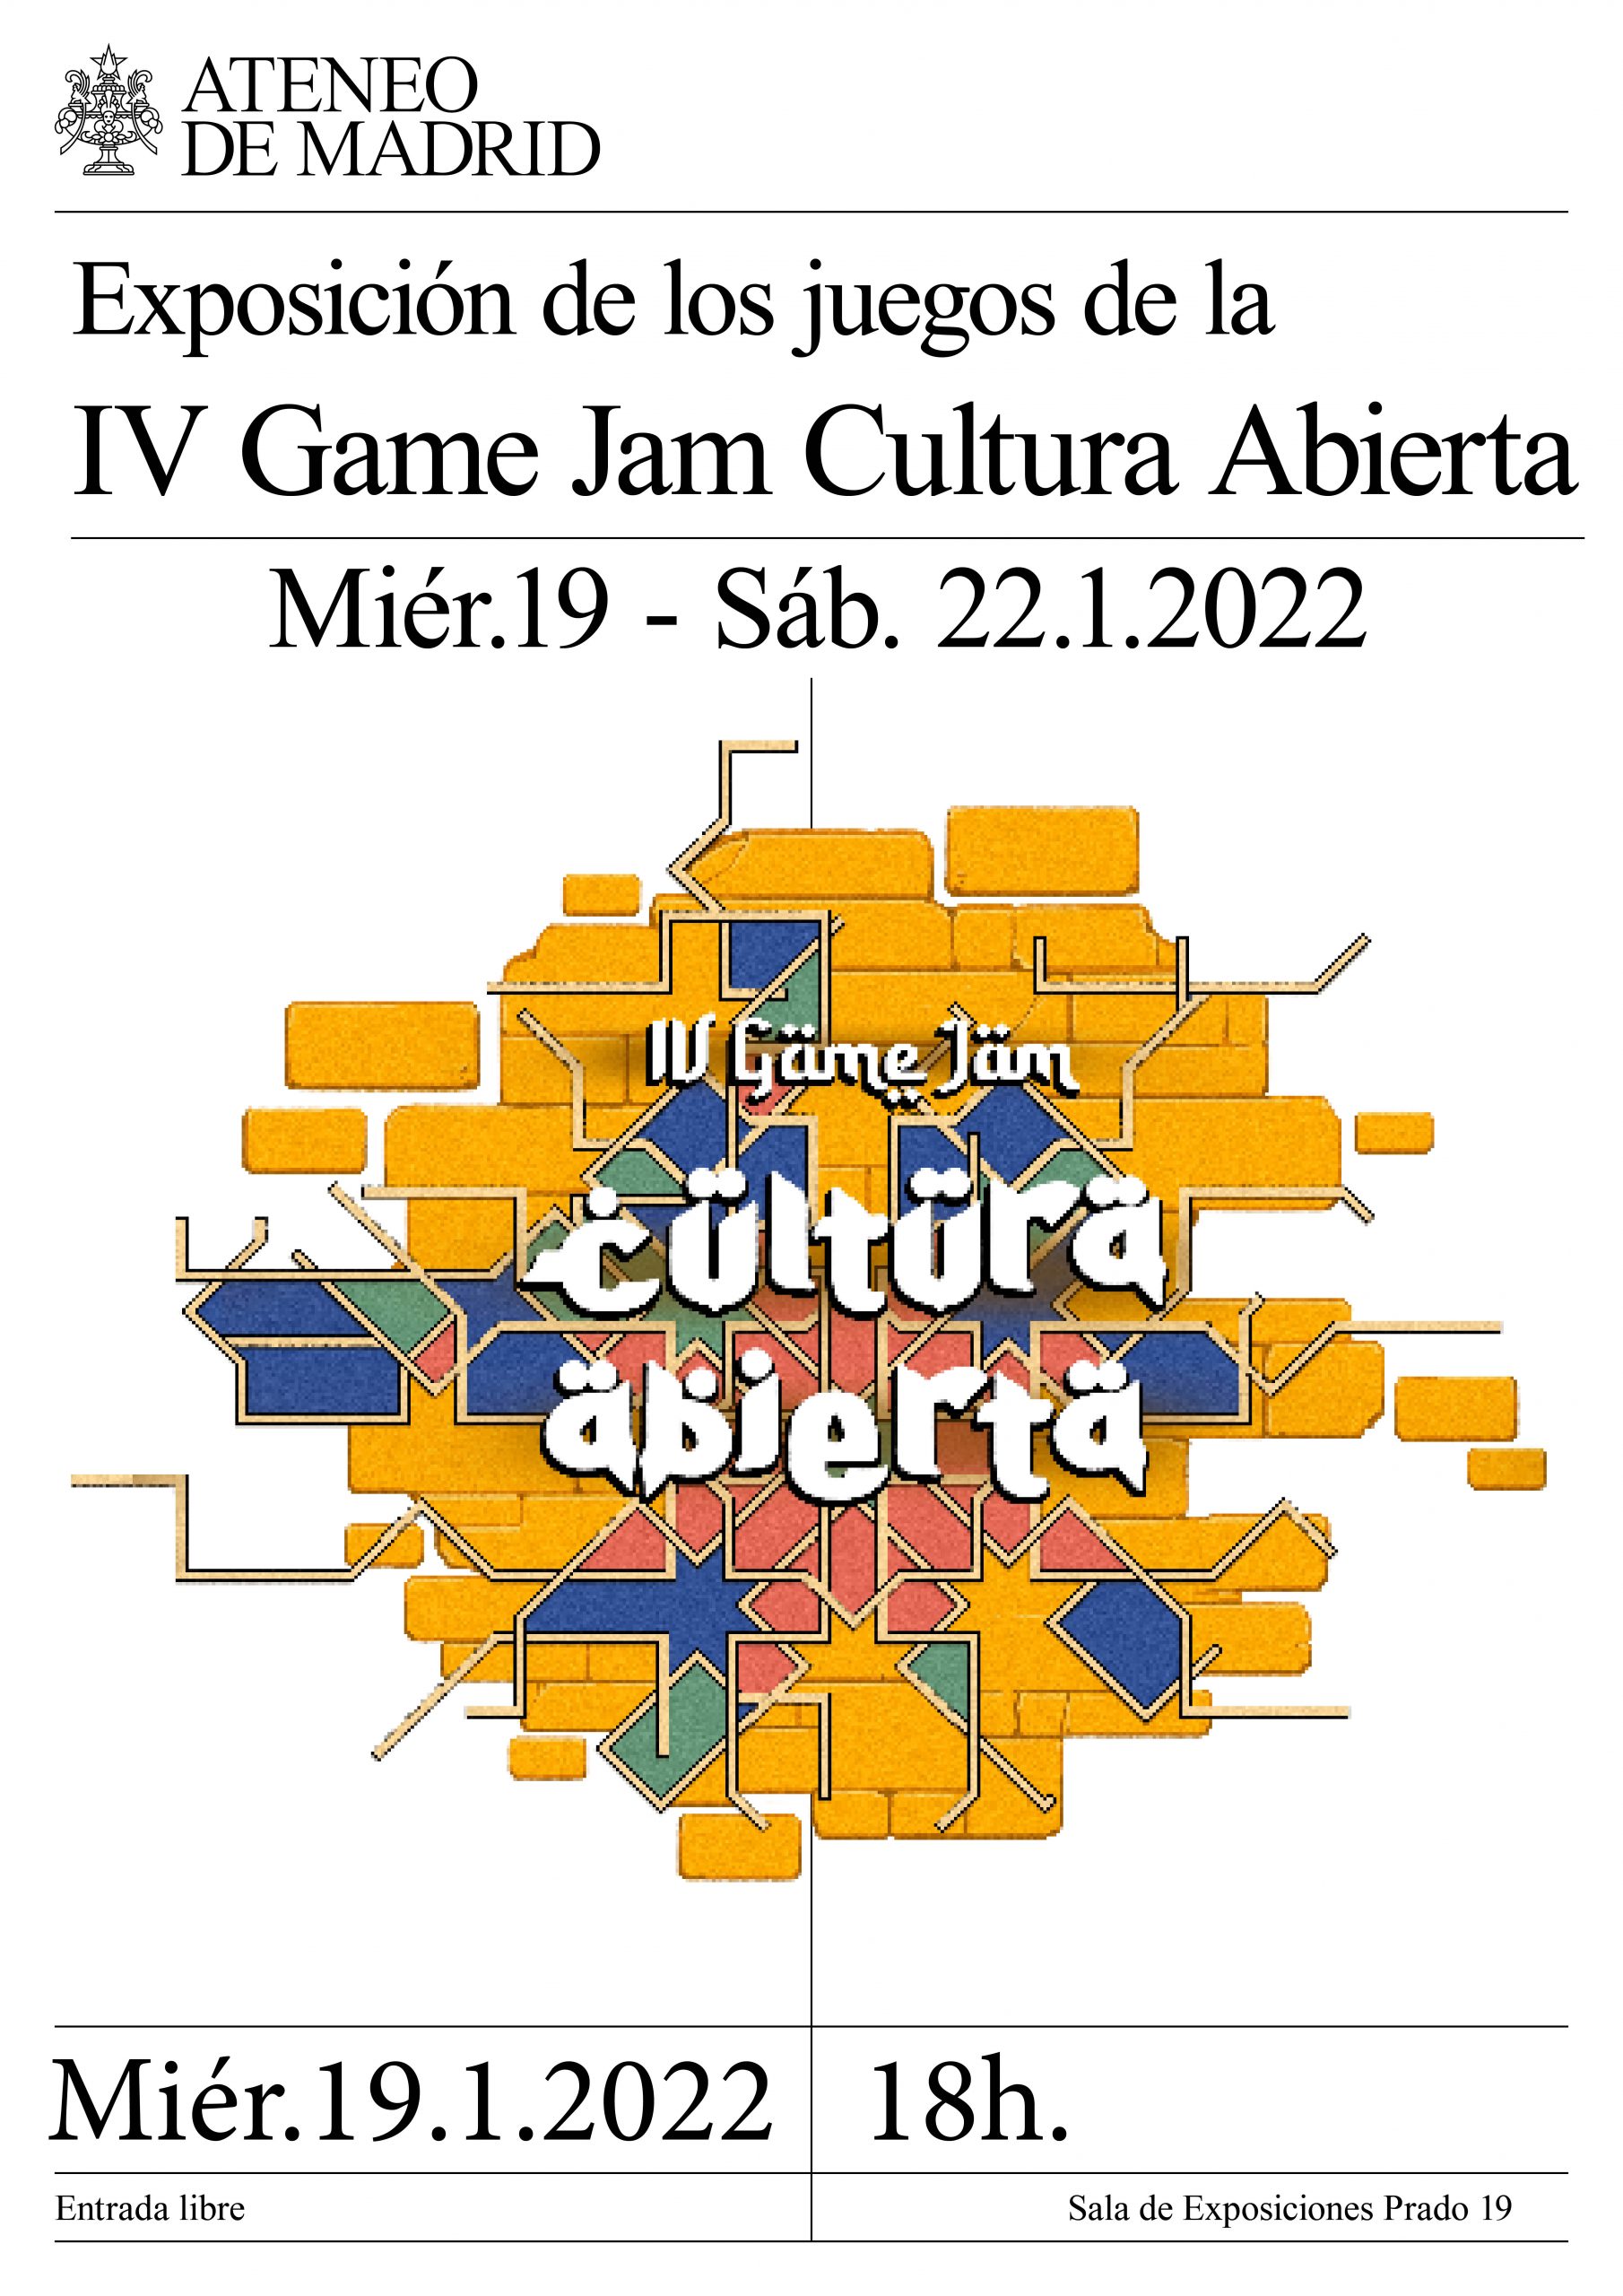 Inauguración de la exposición de la IV Game Jam Cultura Abierta